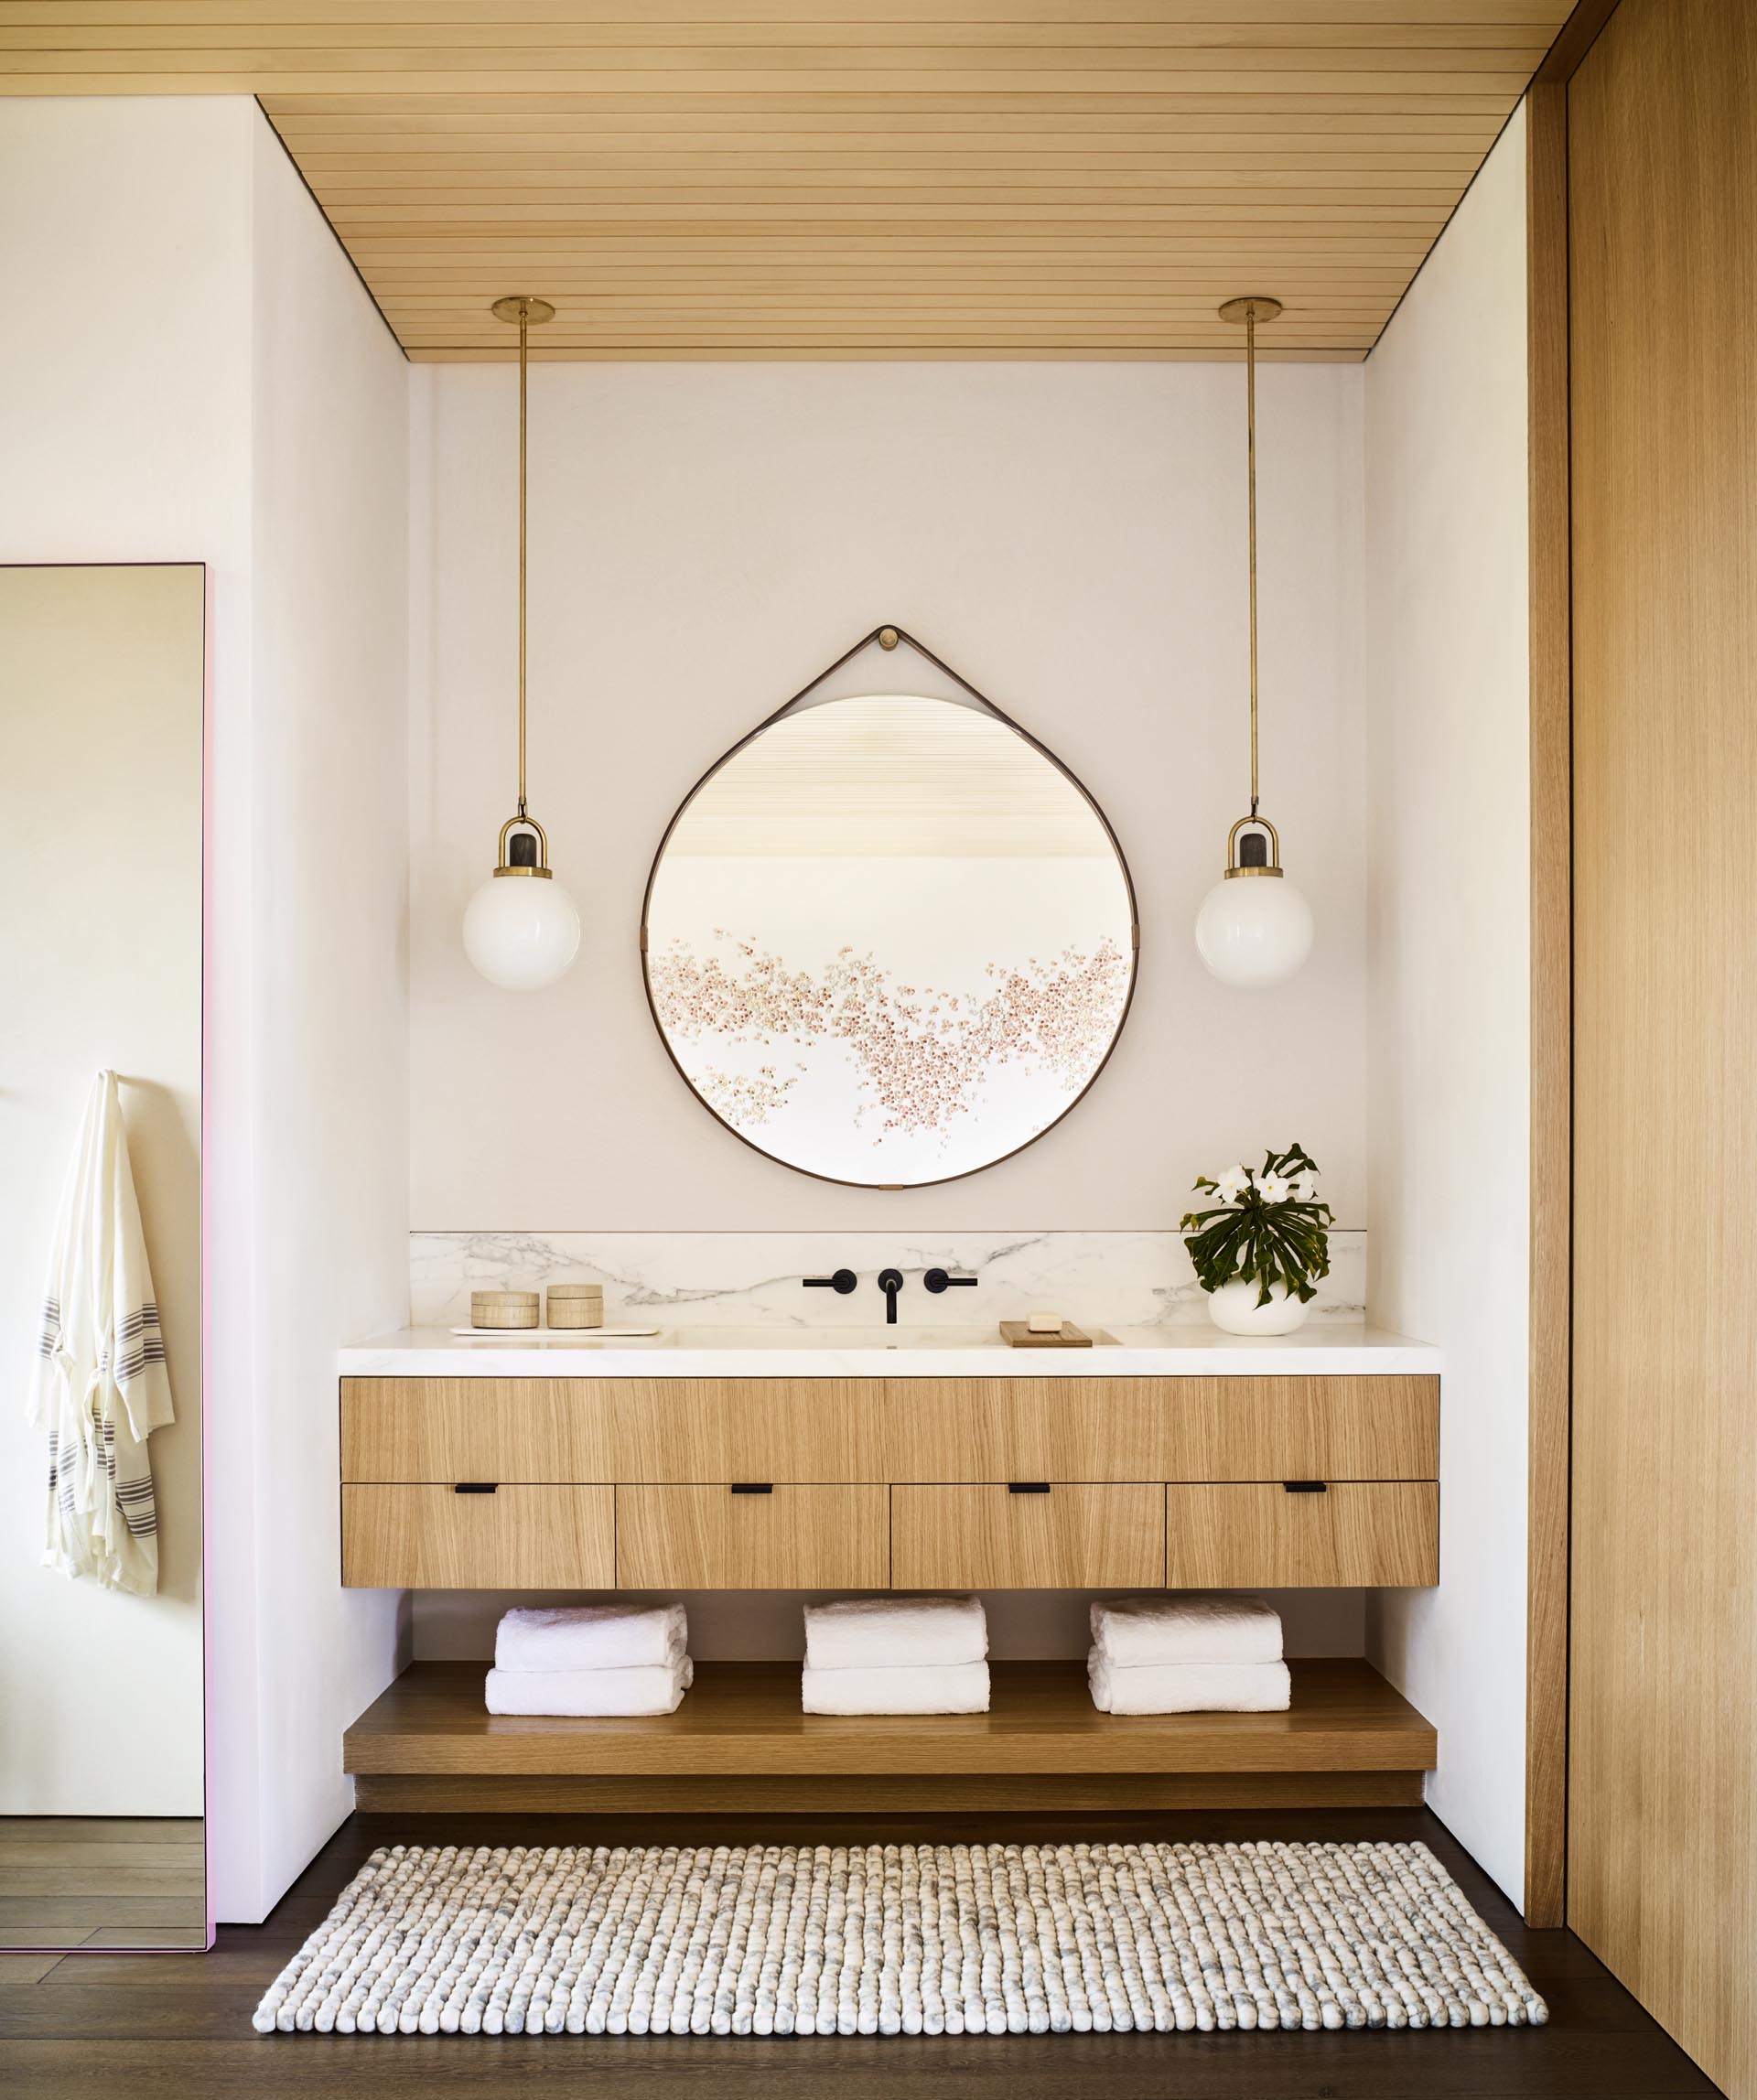 Современная ванная комната с естественной цветовой палитрой, туалетным столиком из светлого дерева и круглым подвесным зеркалом.